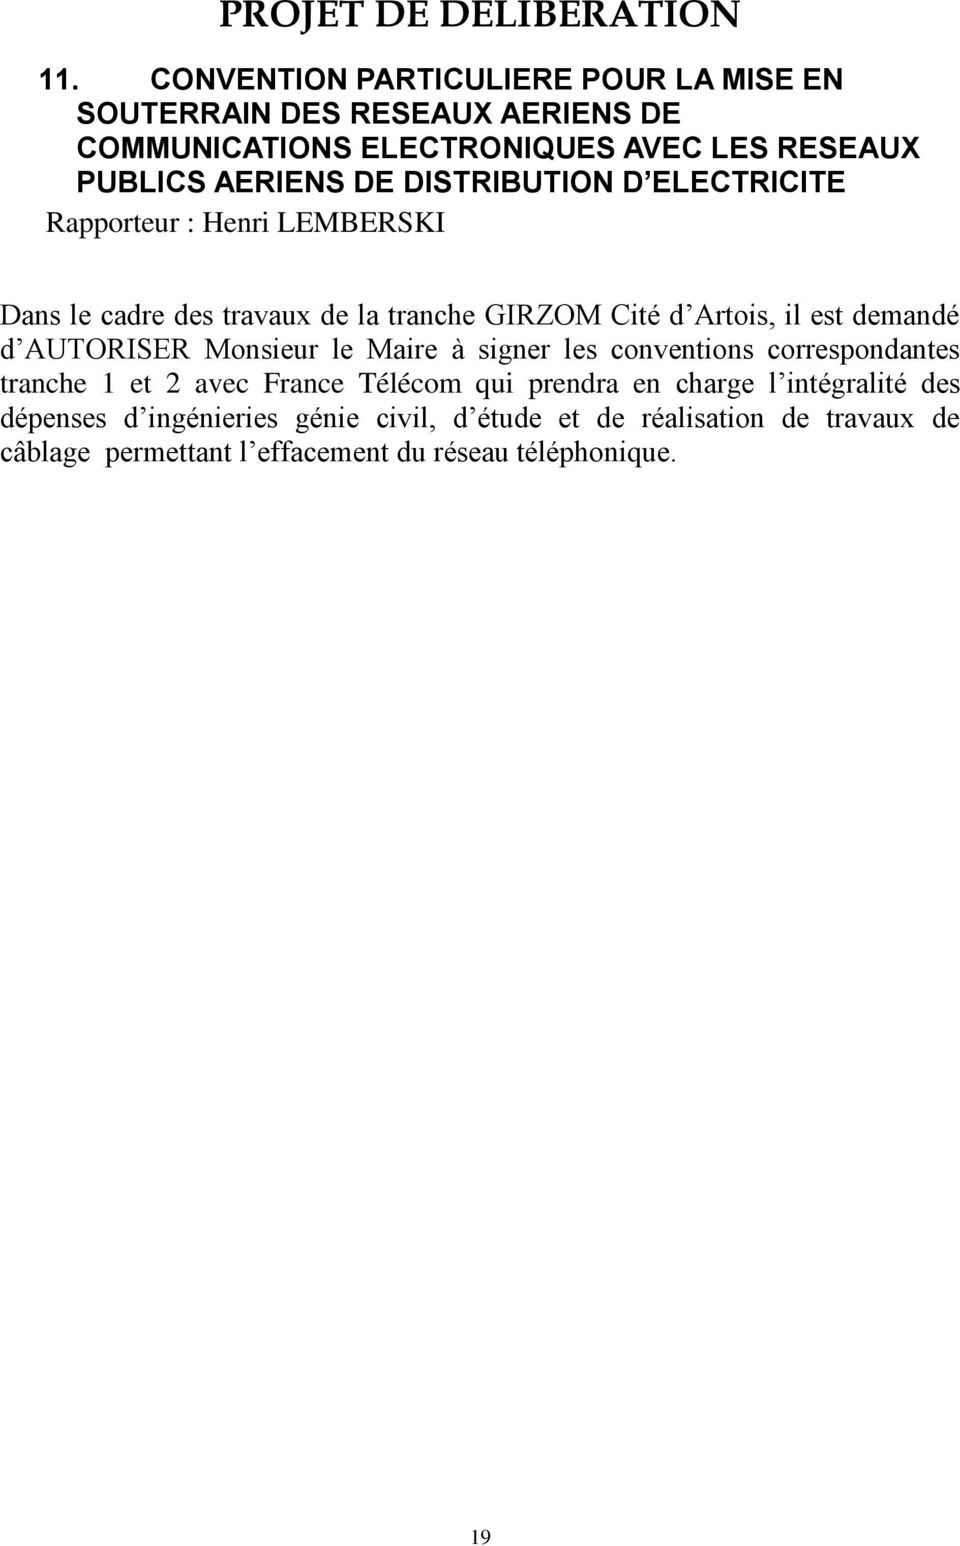 DISTRIBUTION D ELECTRICITE Rapporteur : Henri LEMBERSKI Dans le cadre des travaux de la tranche GIRZOM Cité d Artois, il est demandé d AUTORISER